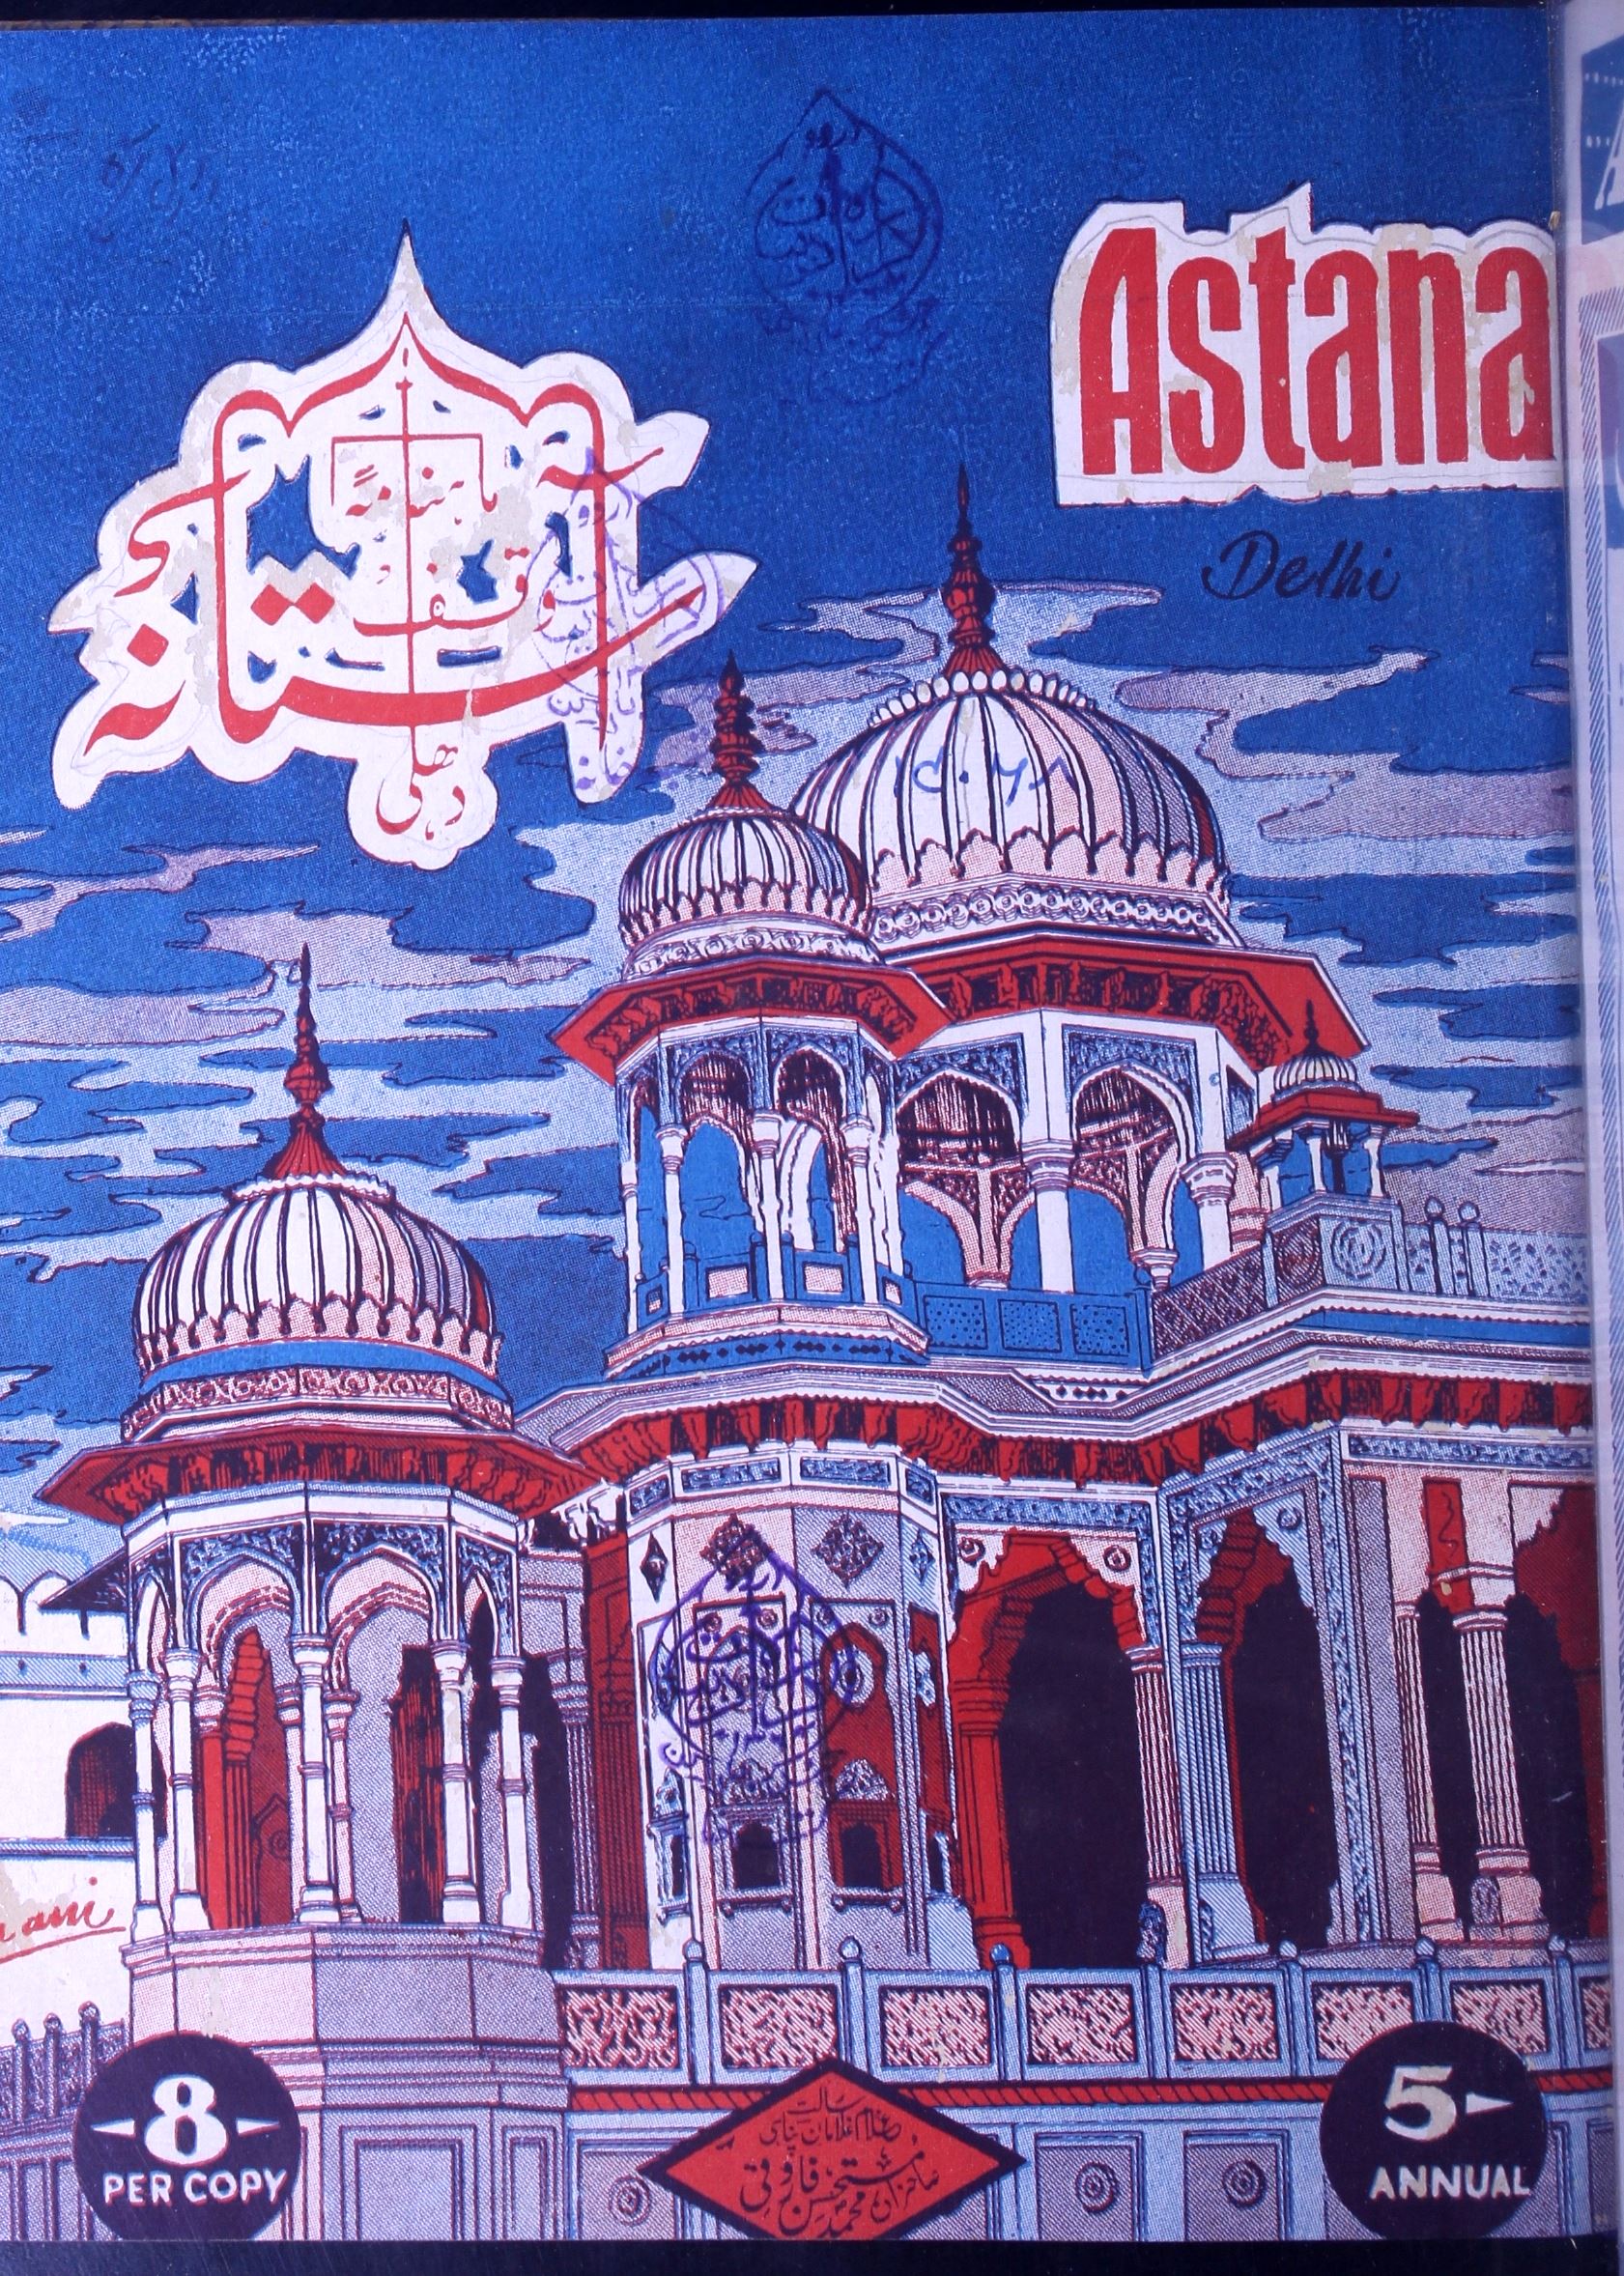 Aastana, Delhi